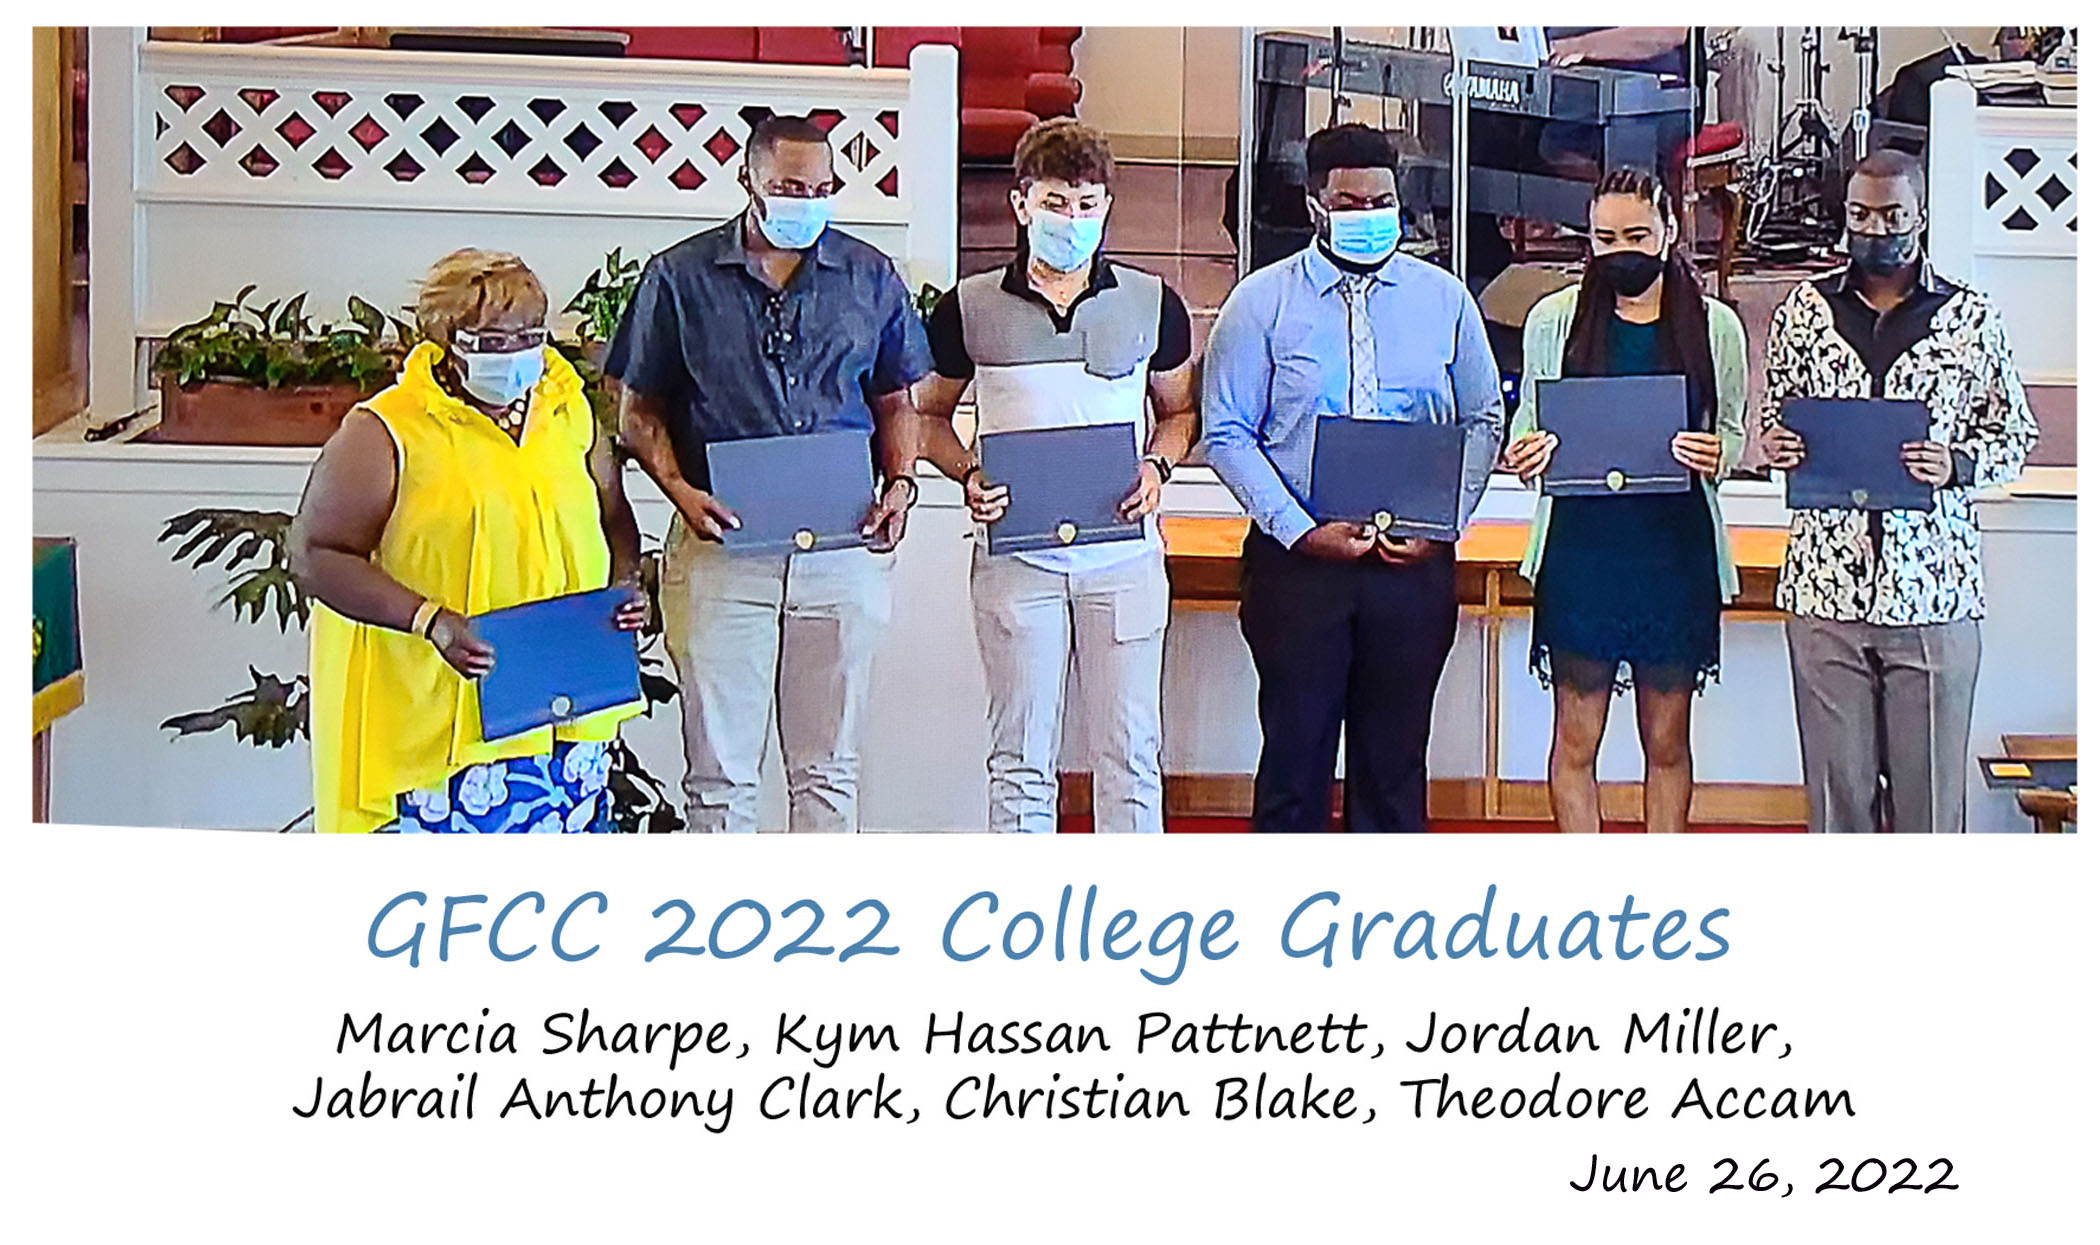 GFCC's college graduates